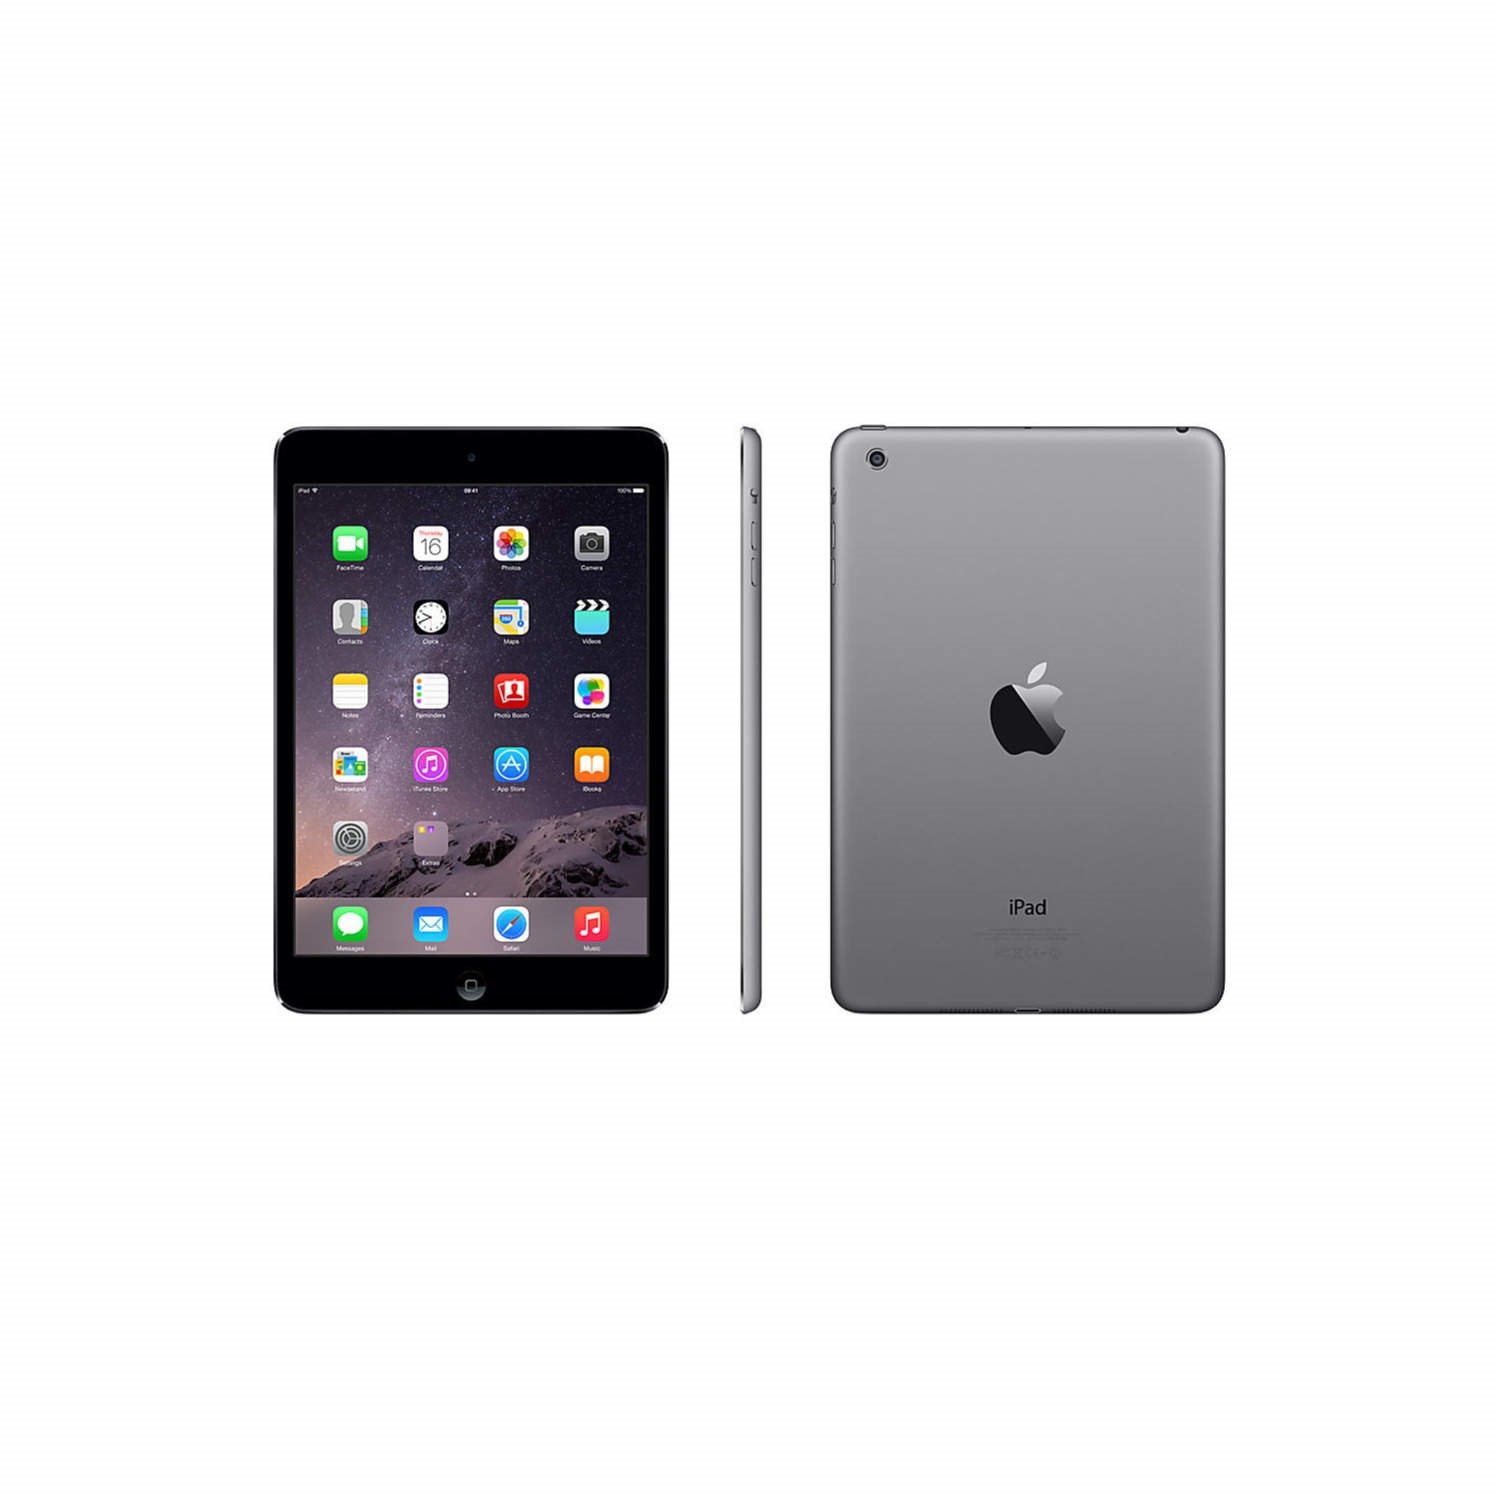 Apple iPad mini 4 (32GB, Wi-Fi + Cellular, Space Gray)